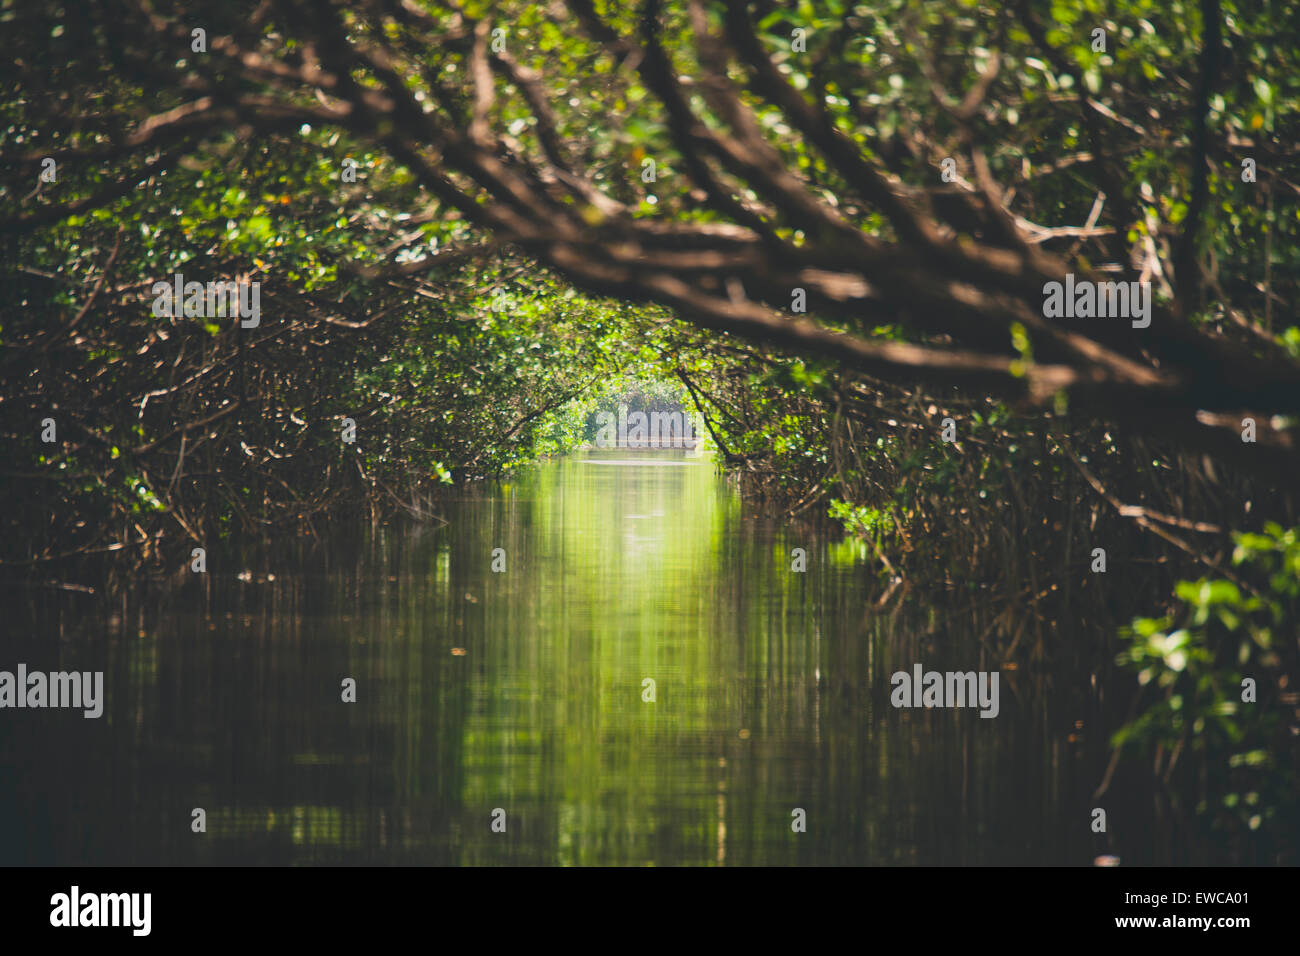 A passage through the Mangrove Swamp near Morón, Cuba. Stock Photo